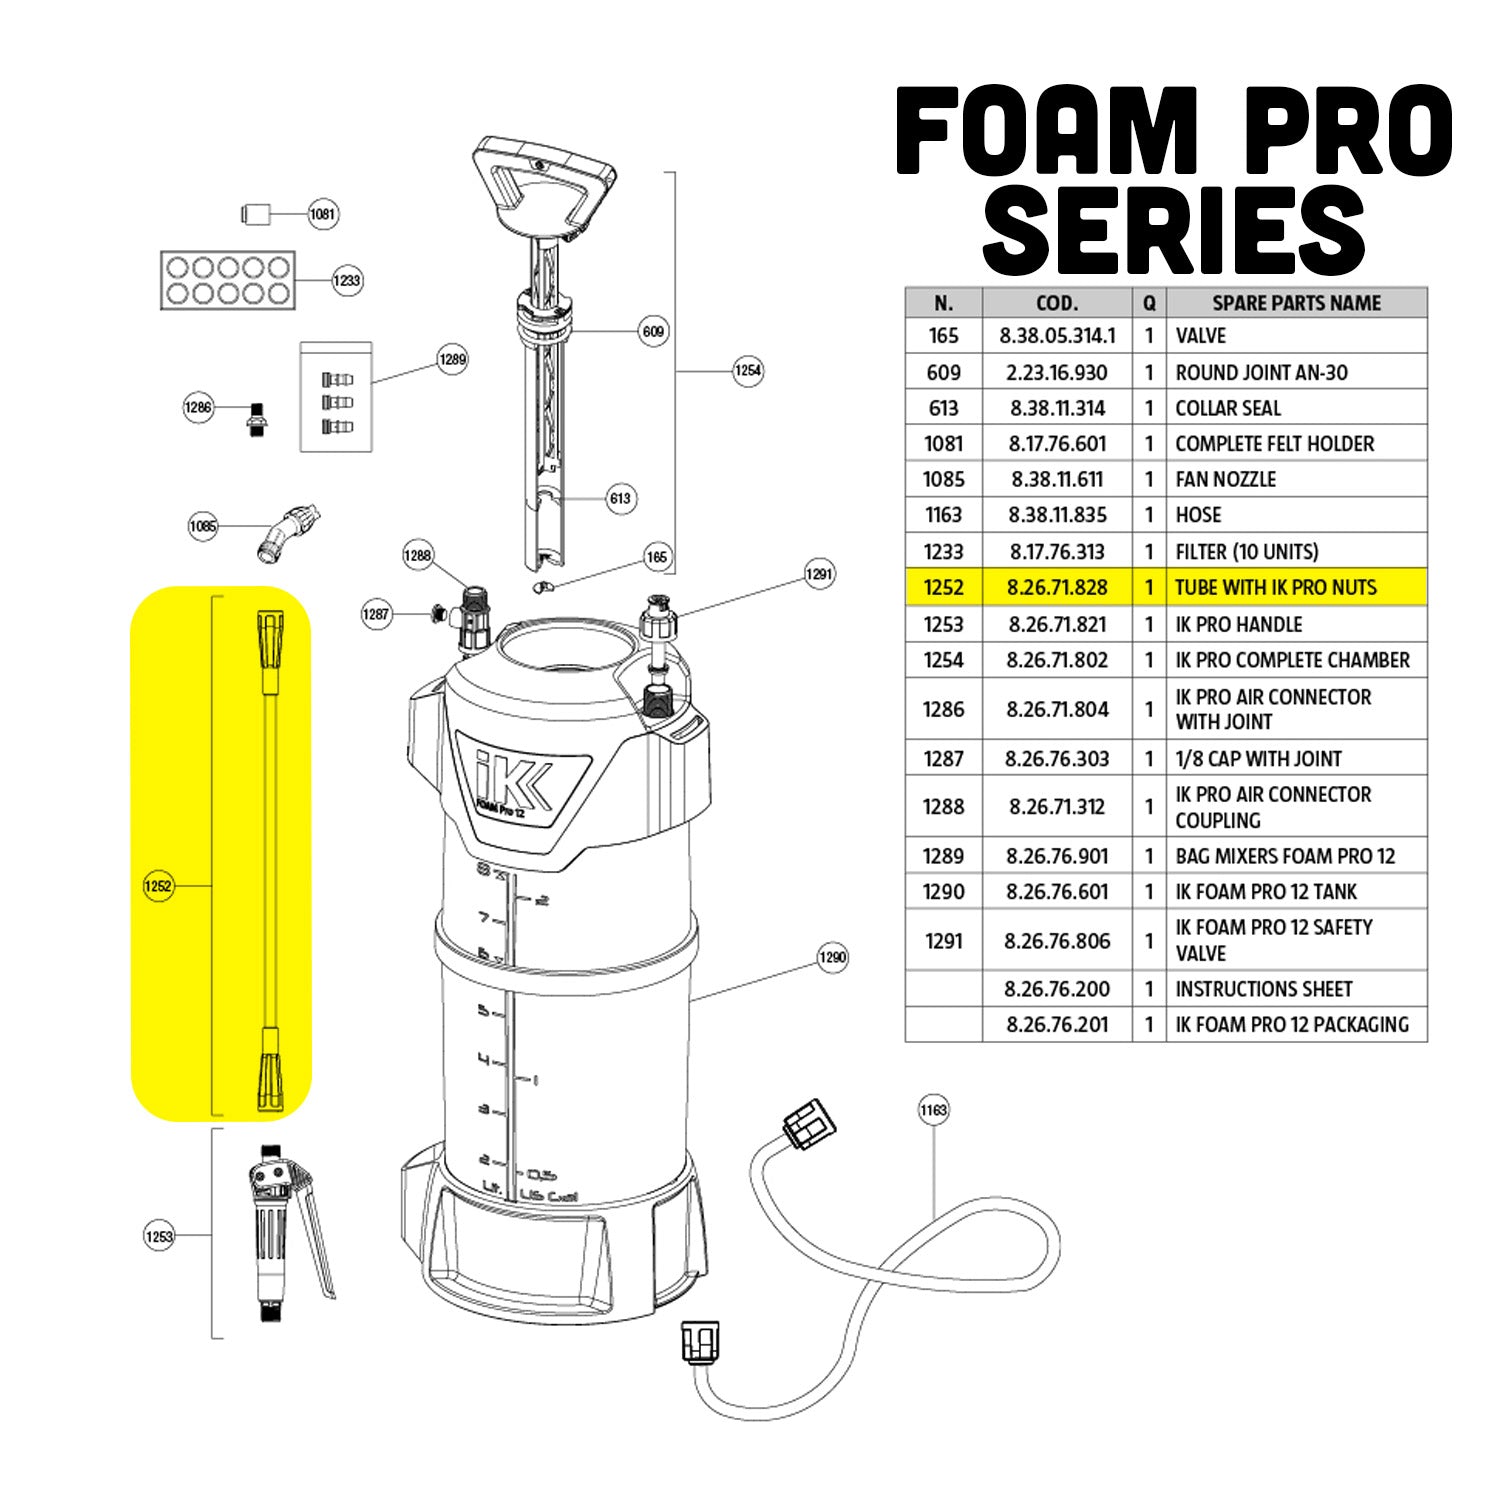 1252-foam-pro-tube-part-guide